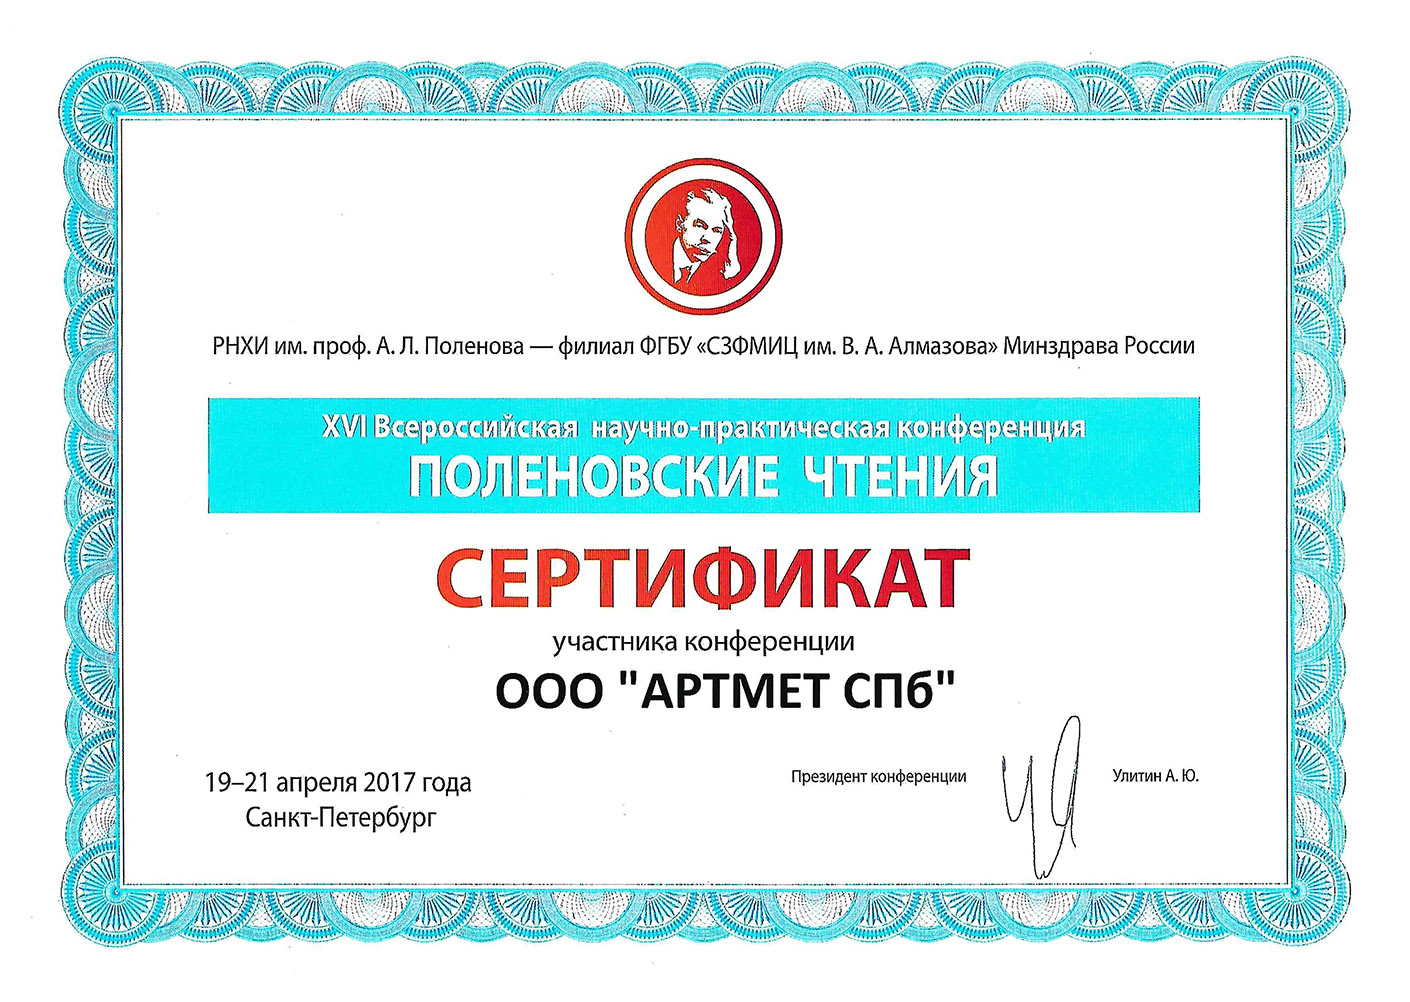 XVI Всероссийская научно-практическая конференция «Поленовские чтения»